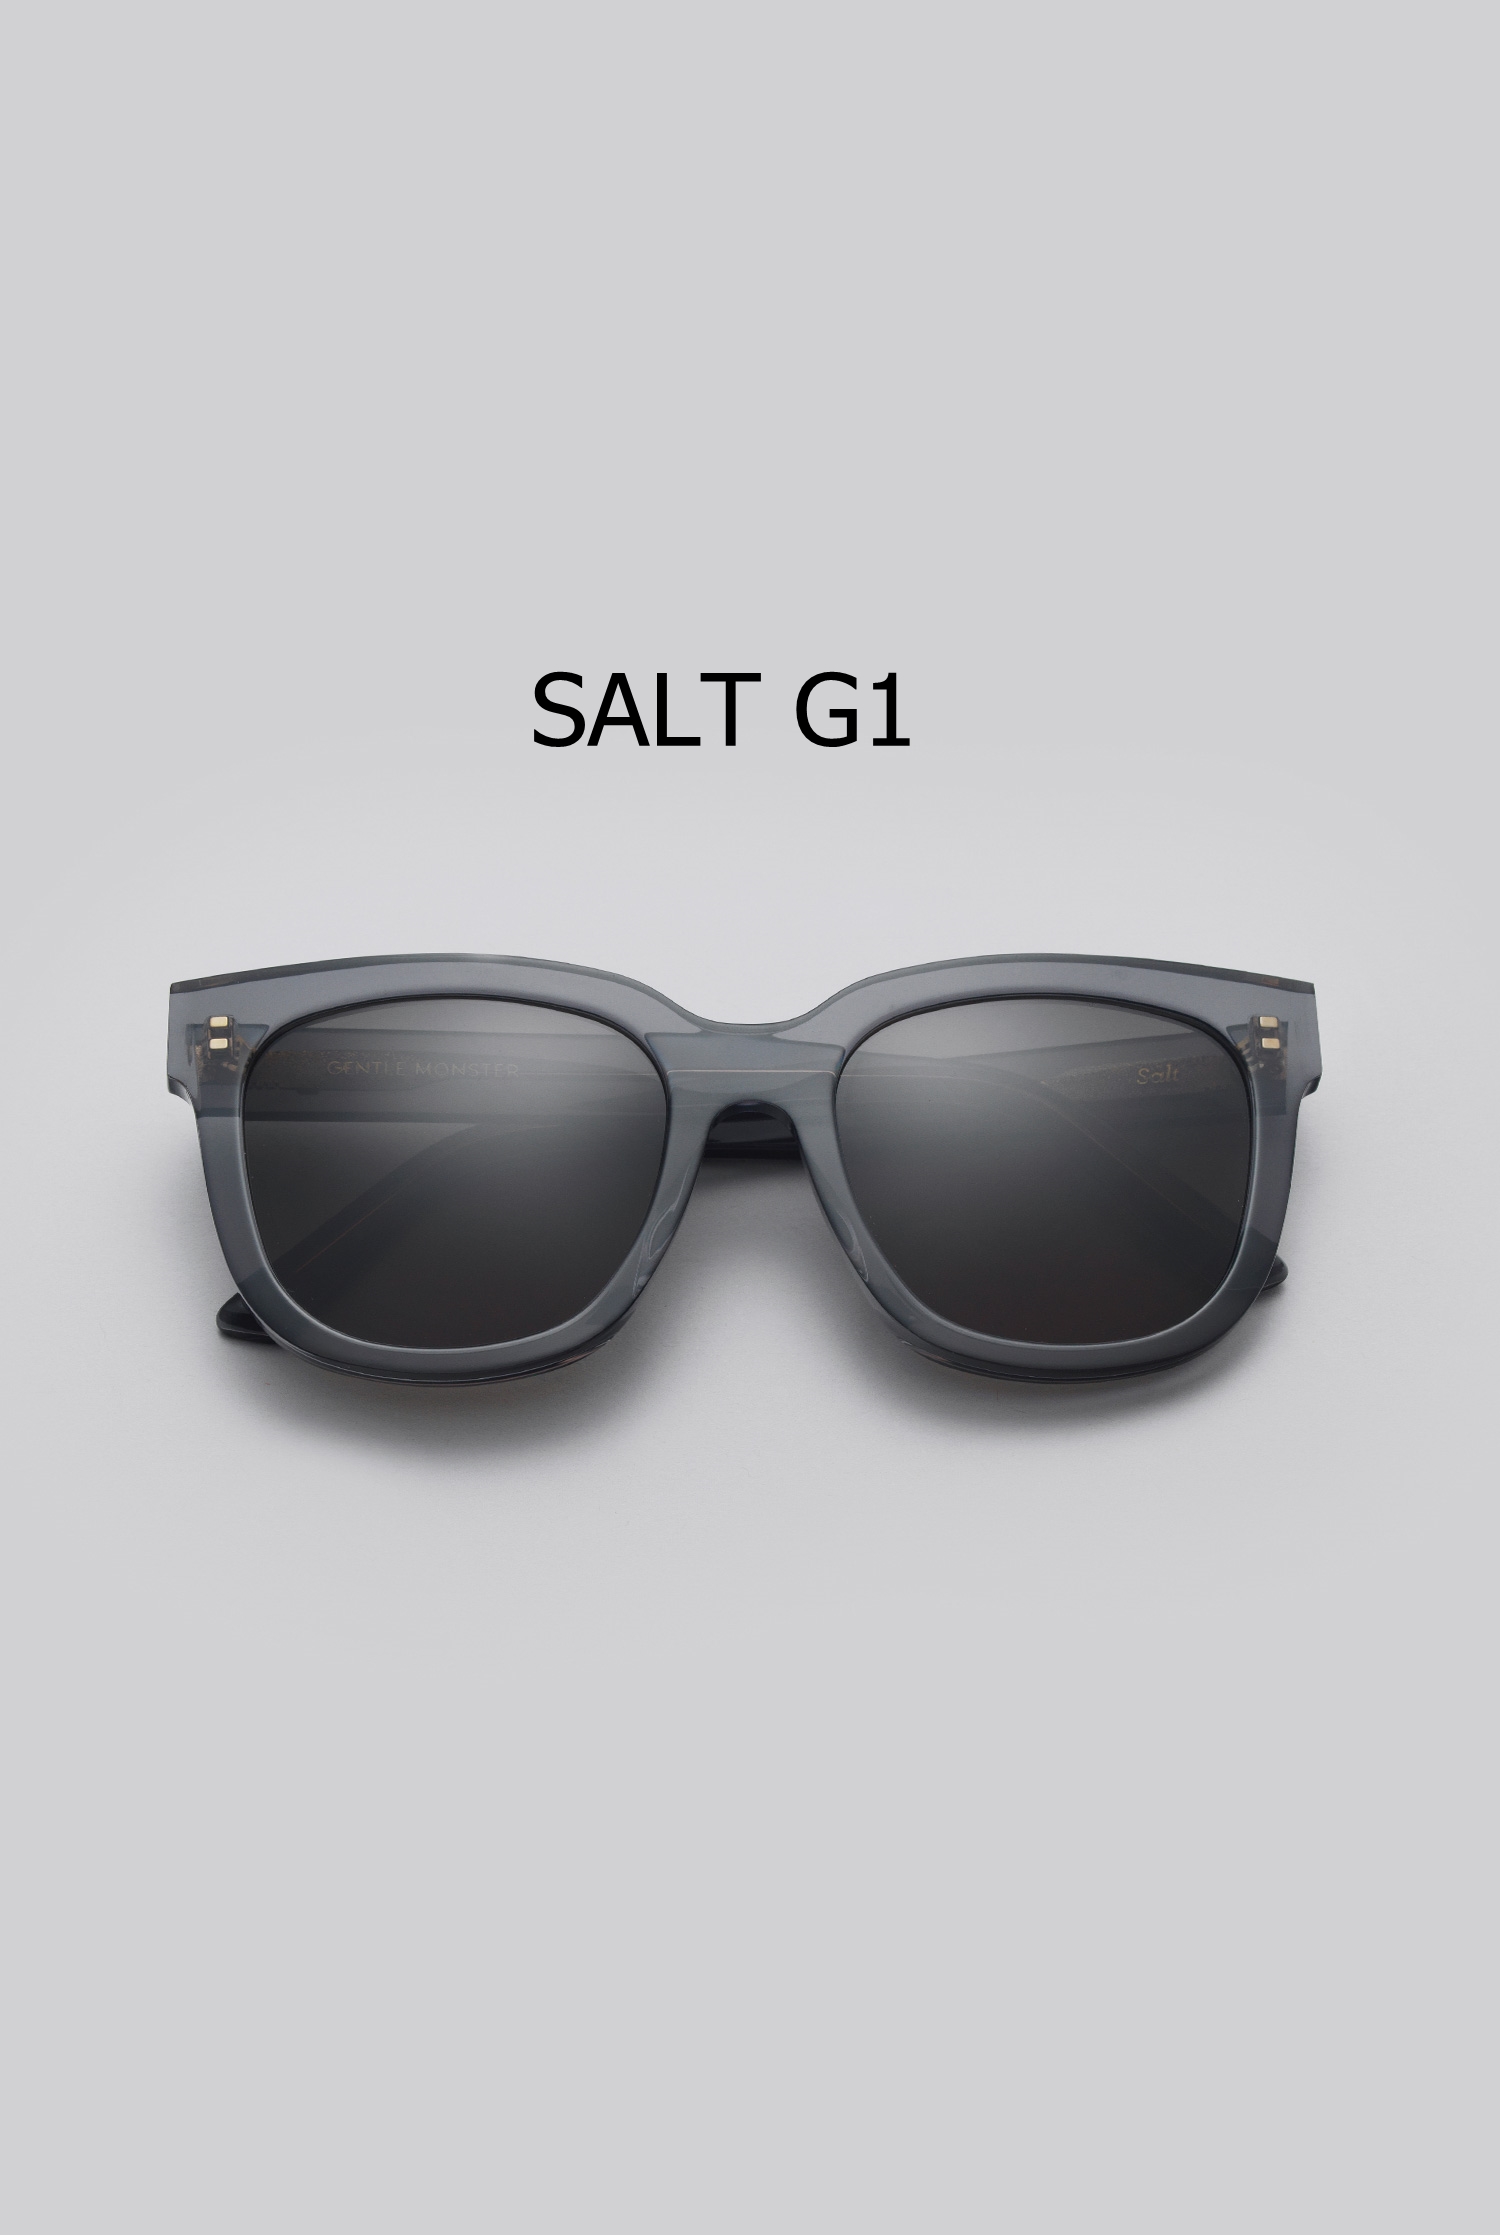 SALT G1